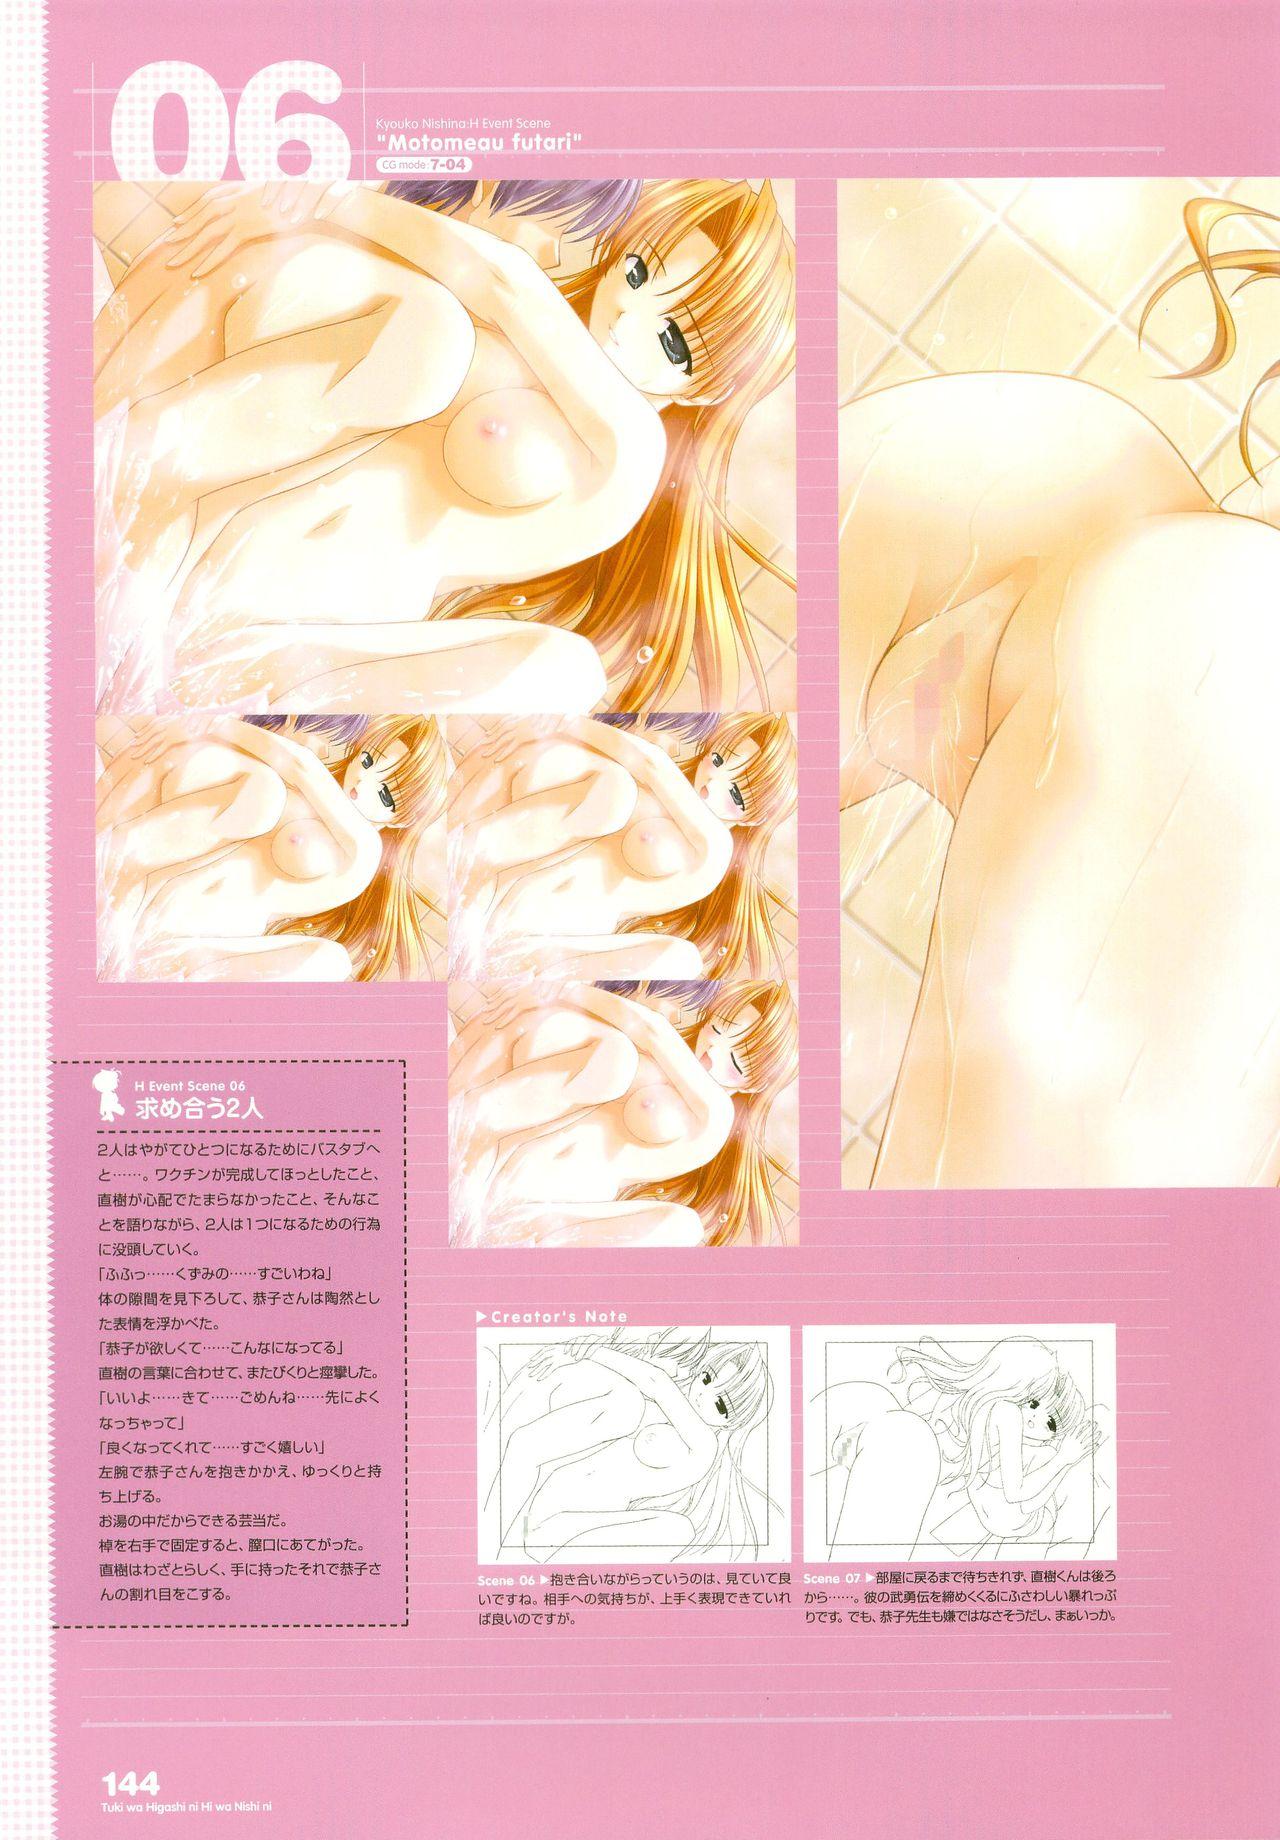 Tsuki wa Higashi ni Hi wa Nishi ni - Operation Sanctuary - Visual Fan Book Shokai Ban 178